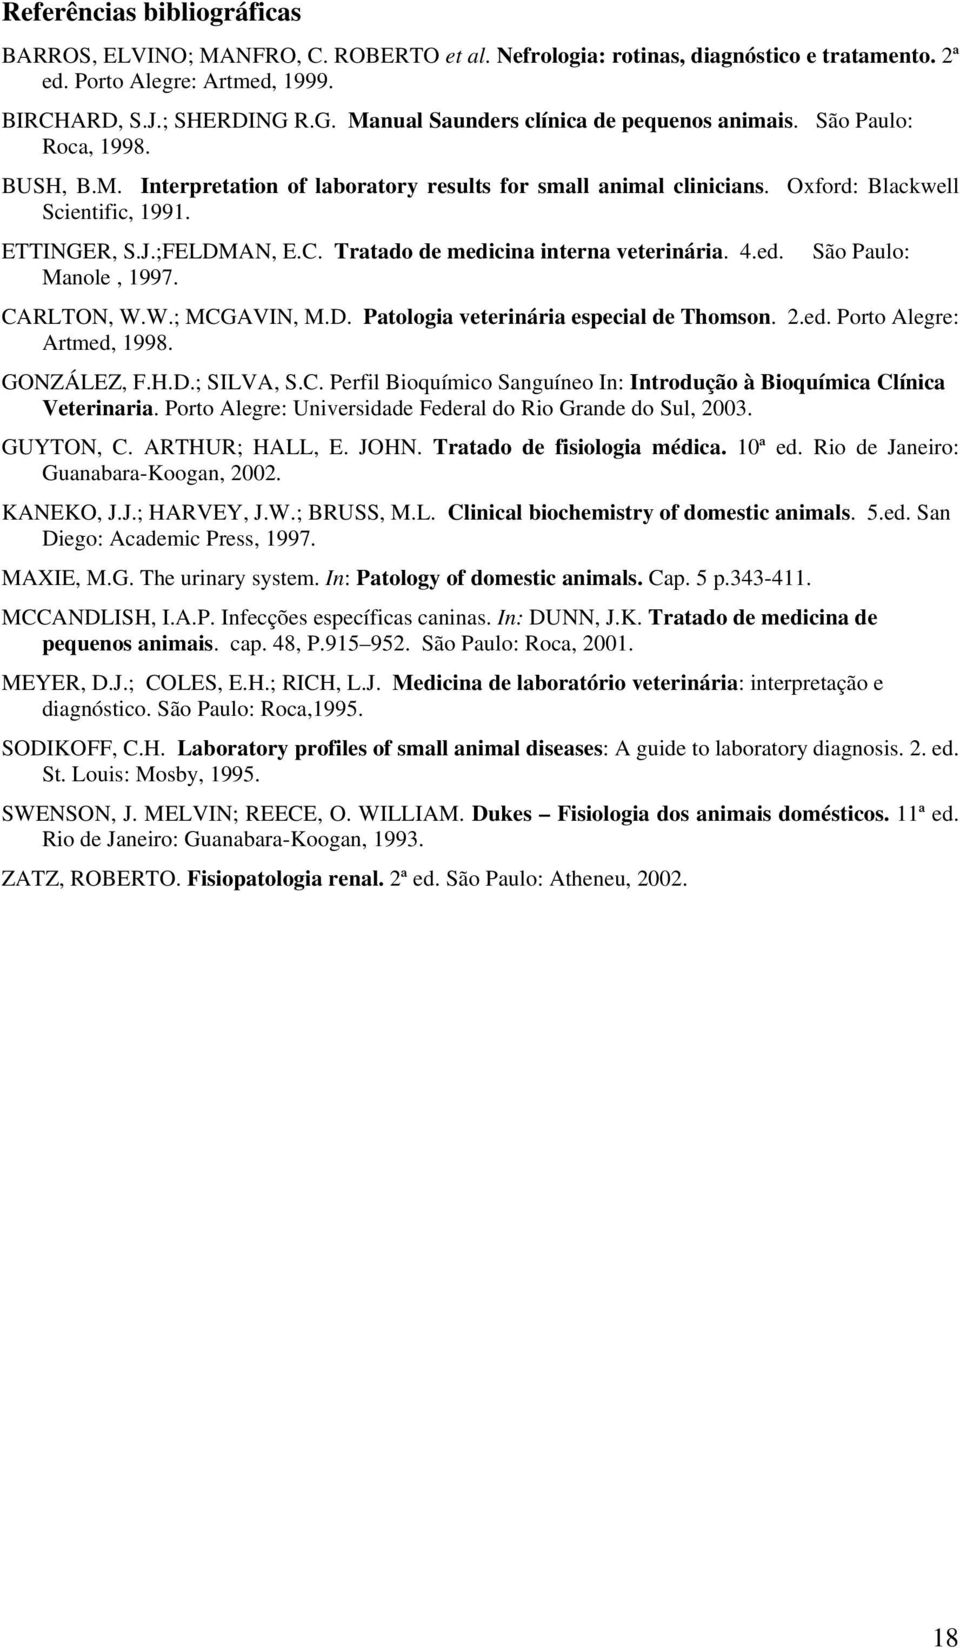 ;FELDMAN, E.C. Tratado de medicina interna veterinária. 4.ed. Manole, 1997. São Paulo: CARLTON, W.W.; MCGAVIN, M.D. Patologia veterinária especial de Thomson. 2.ed. Porto Alegre: Artmed, 1998.